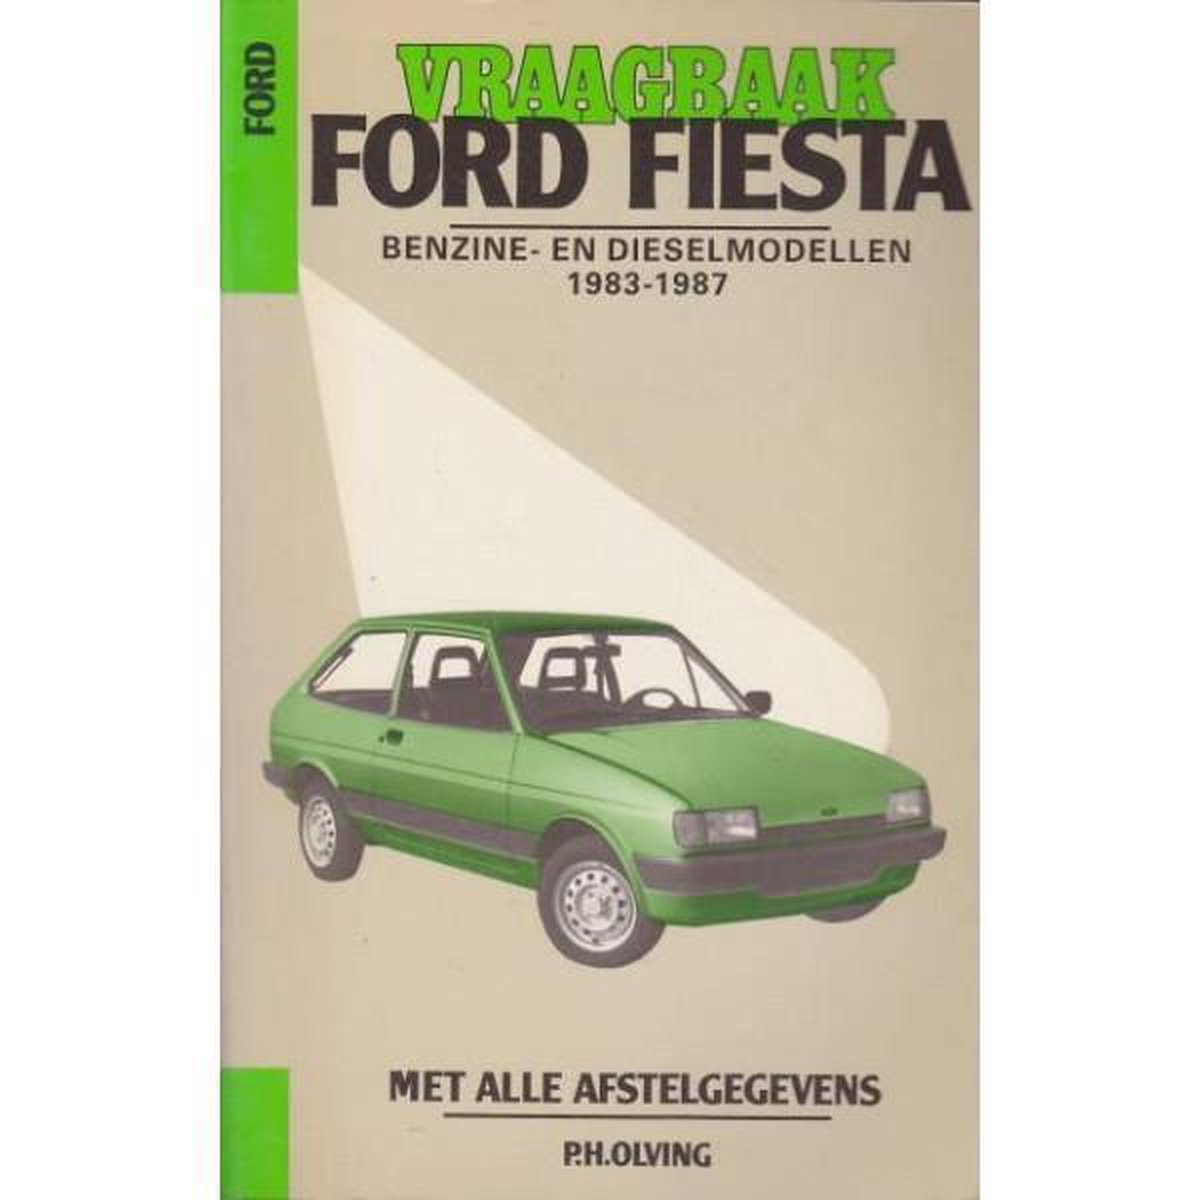 Vraagbaak Ford Fiesta Benzine- en Dieselmodellen 1983 - 1987 - P.H. Olving